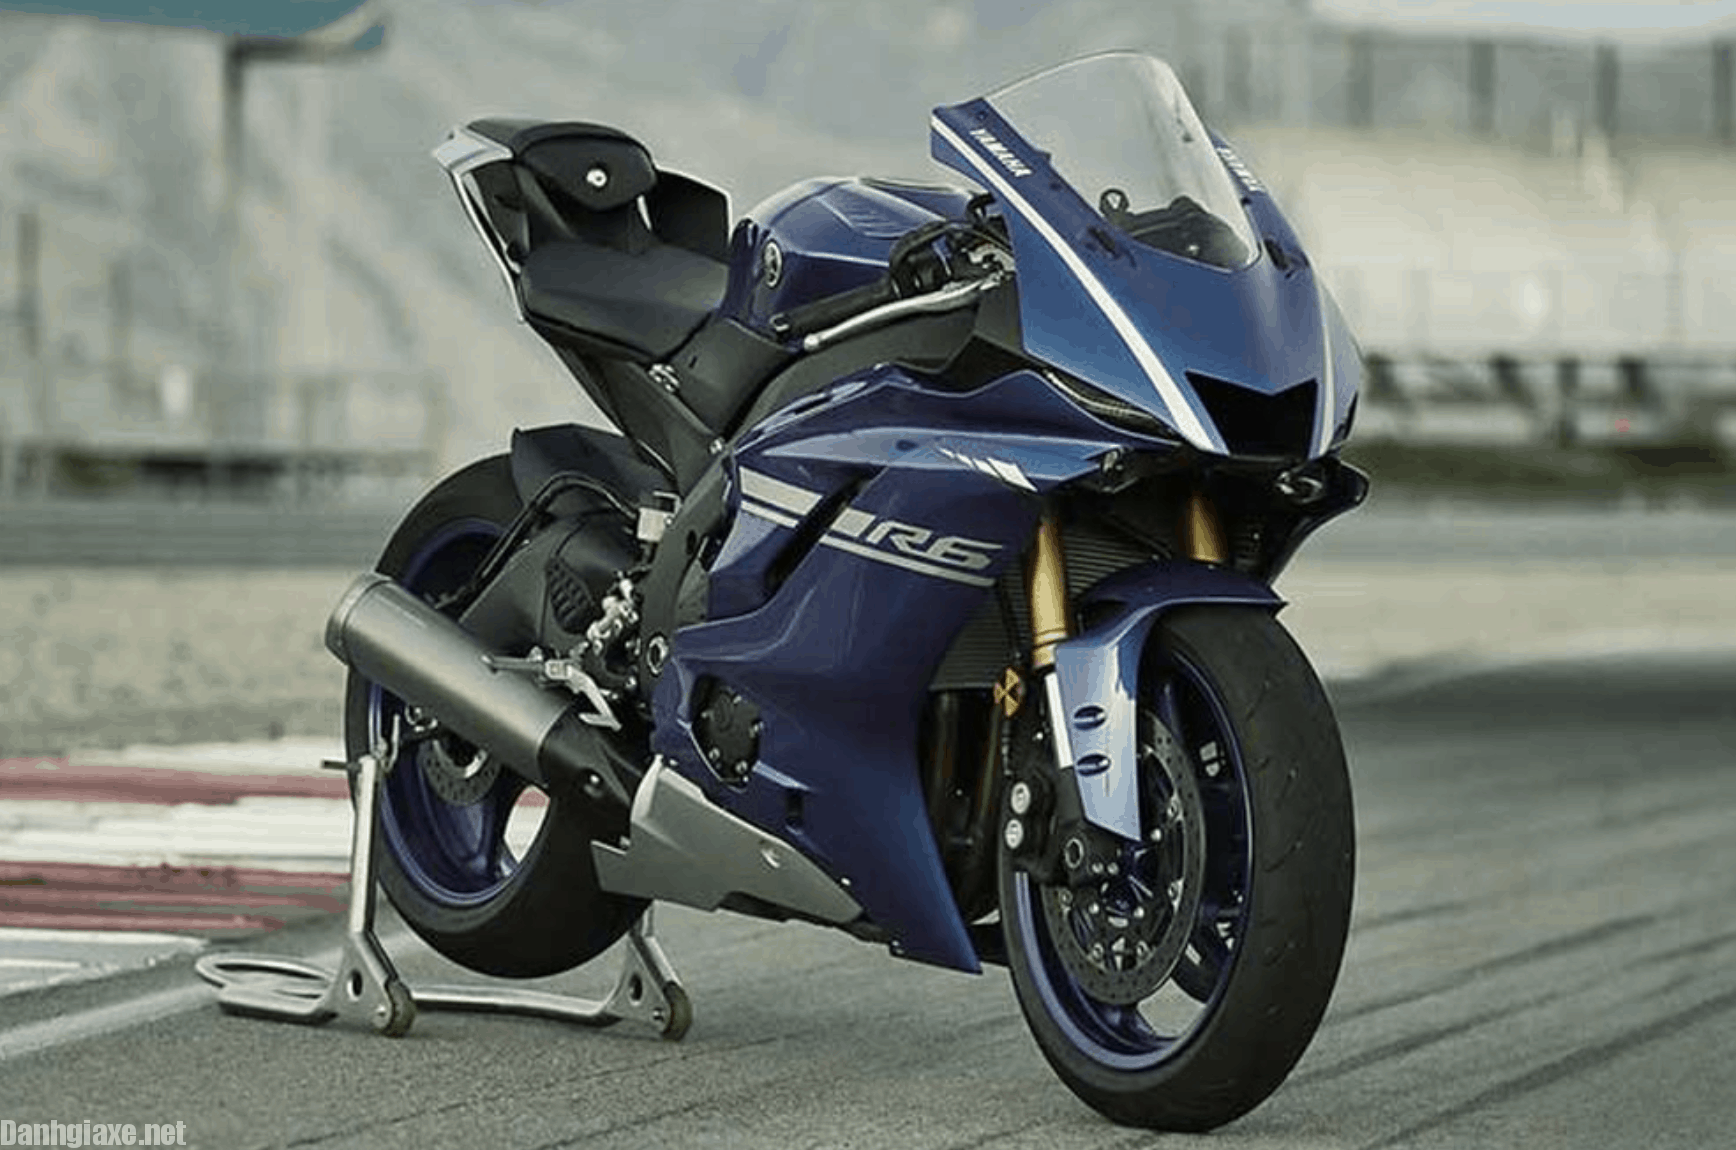 Una pena parece que 2016 no será el año de una nueva Yamaha YZFR6